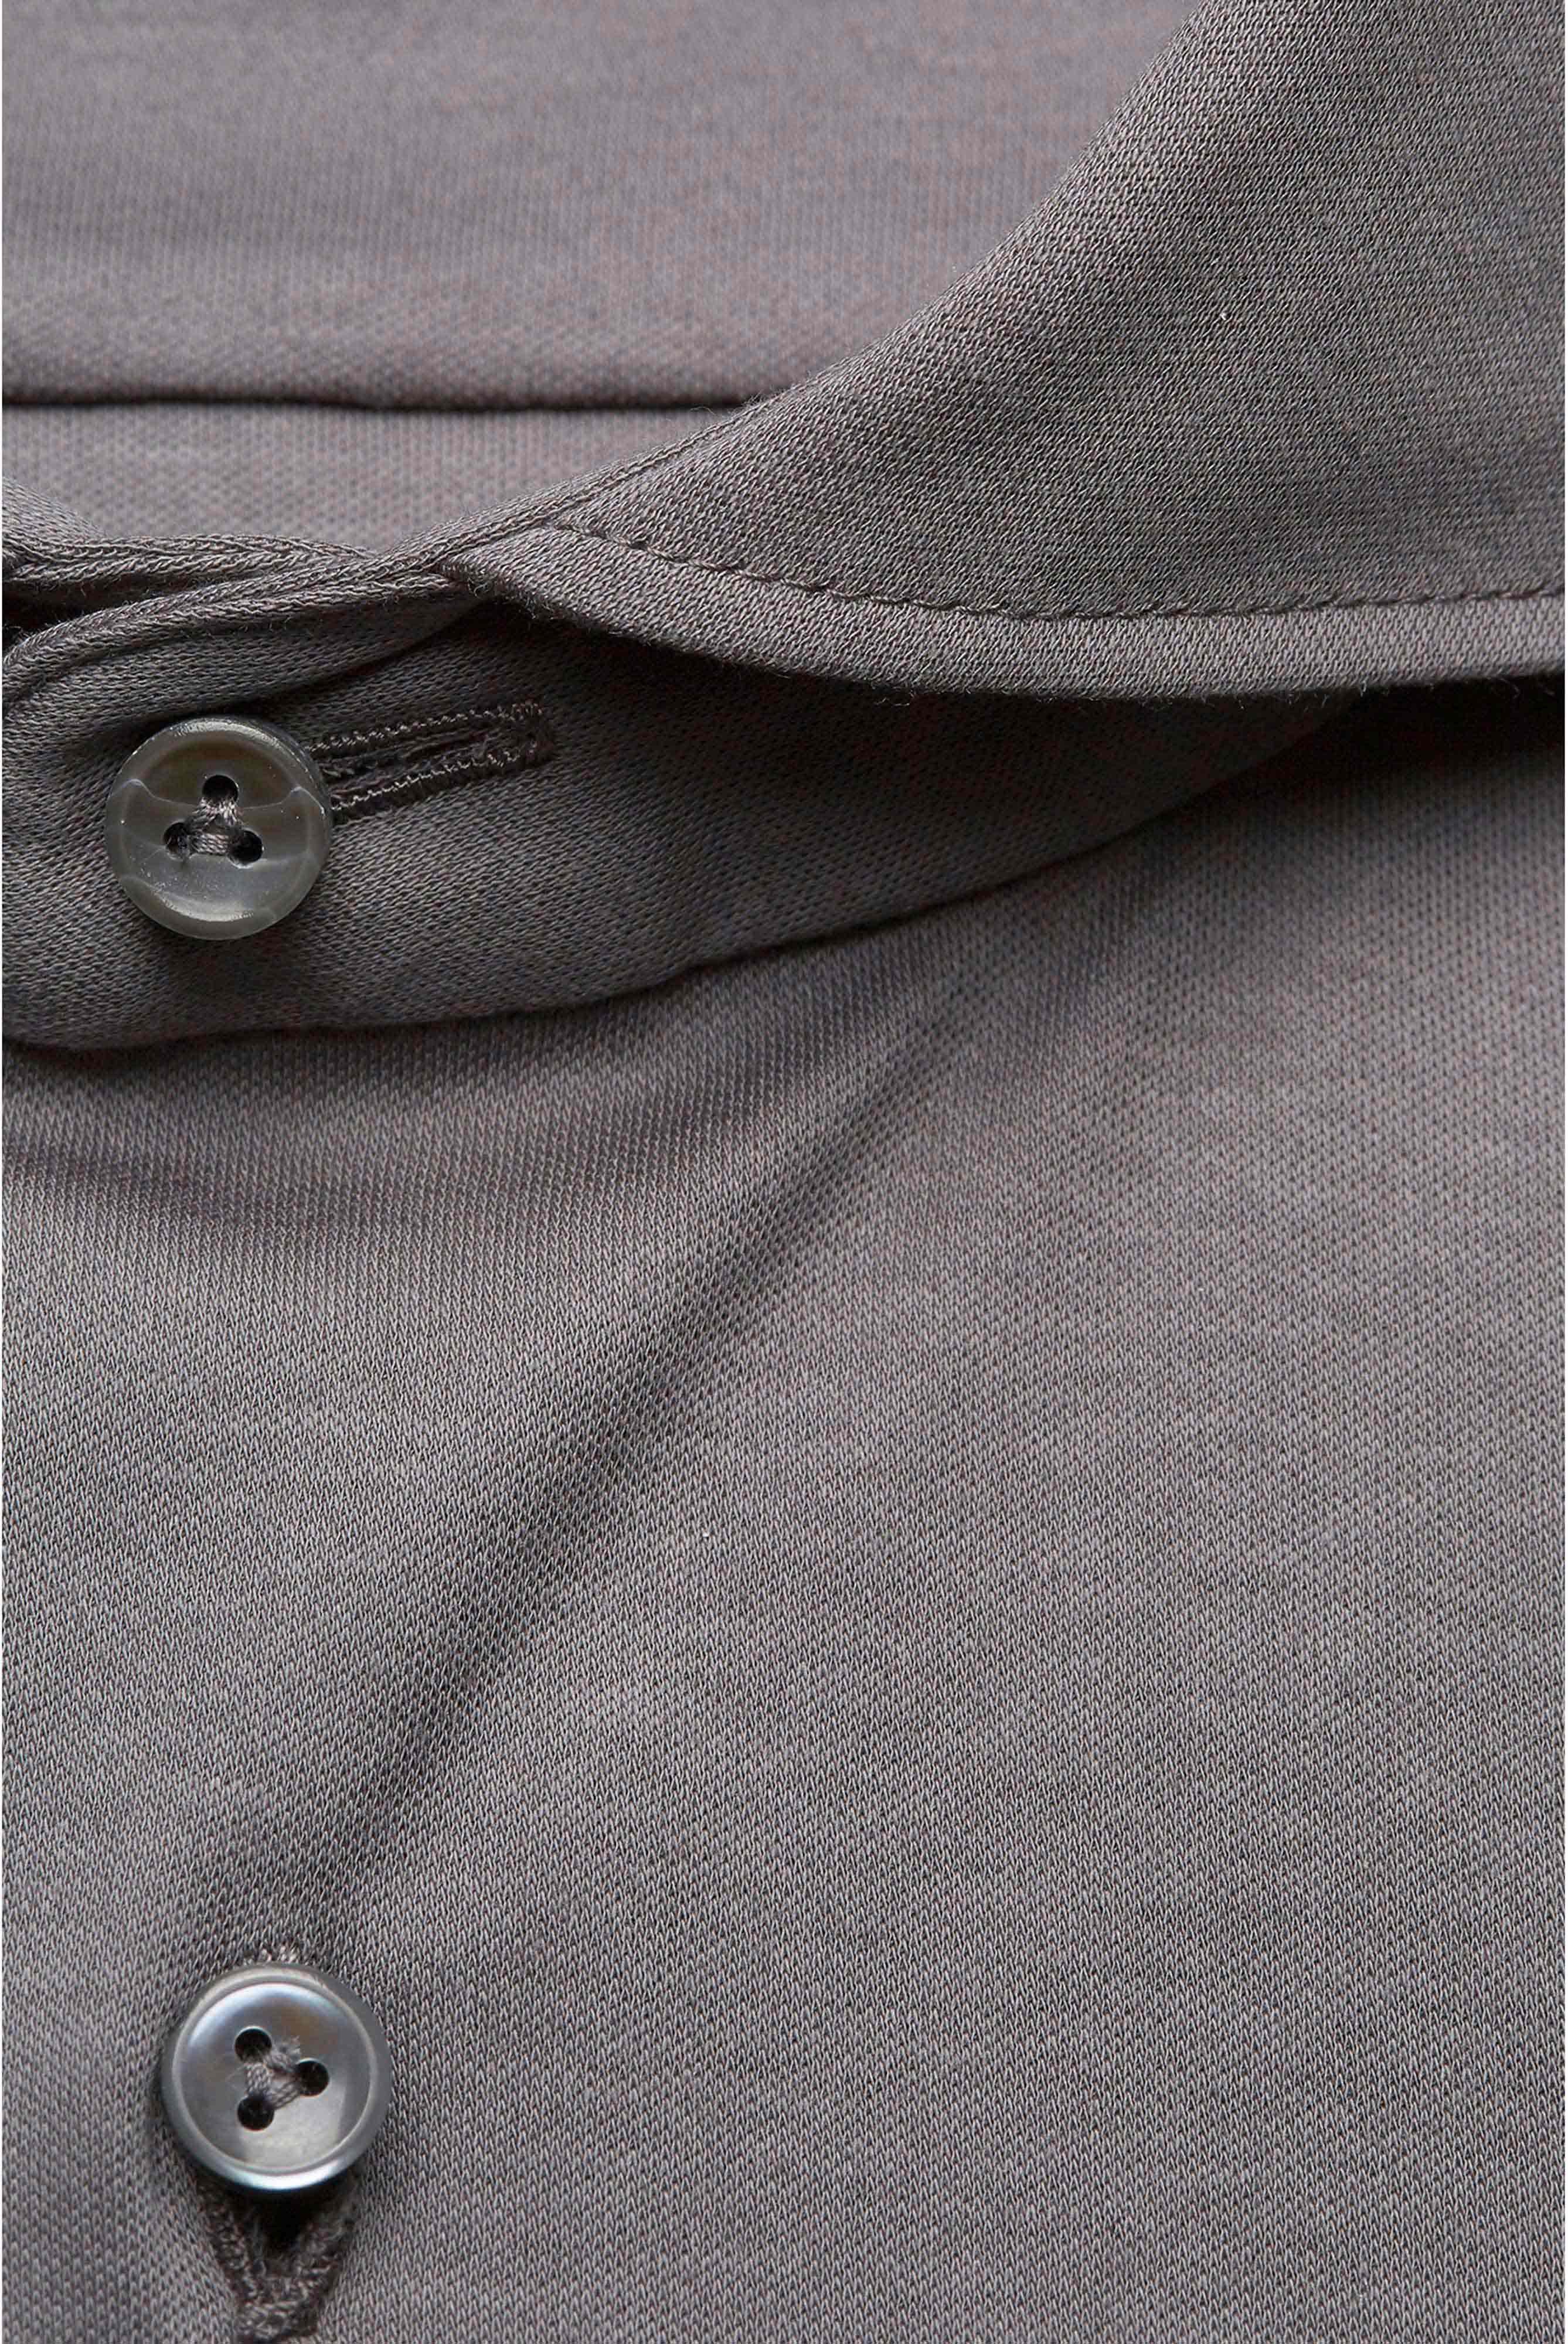 Casual Hemden+Jersey Hemd aus Schweizer Baumwolle Tailor Fit+20.1683.UC.180031.070.M